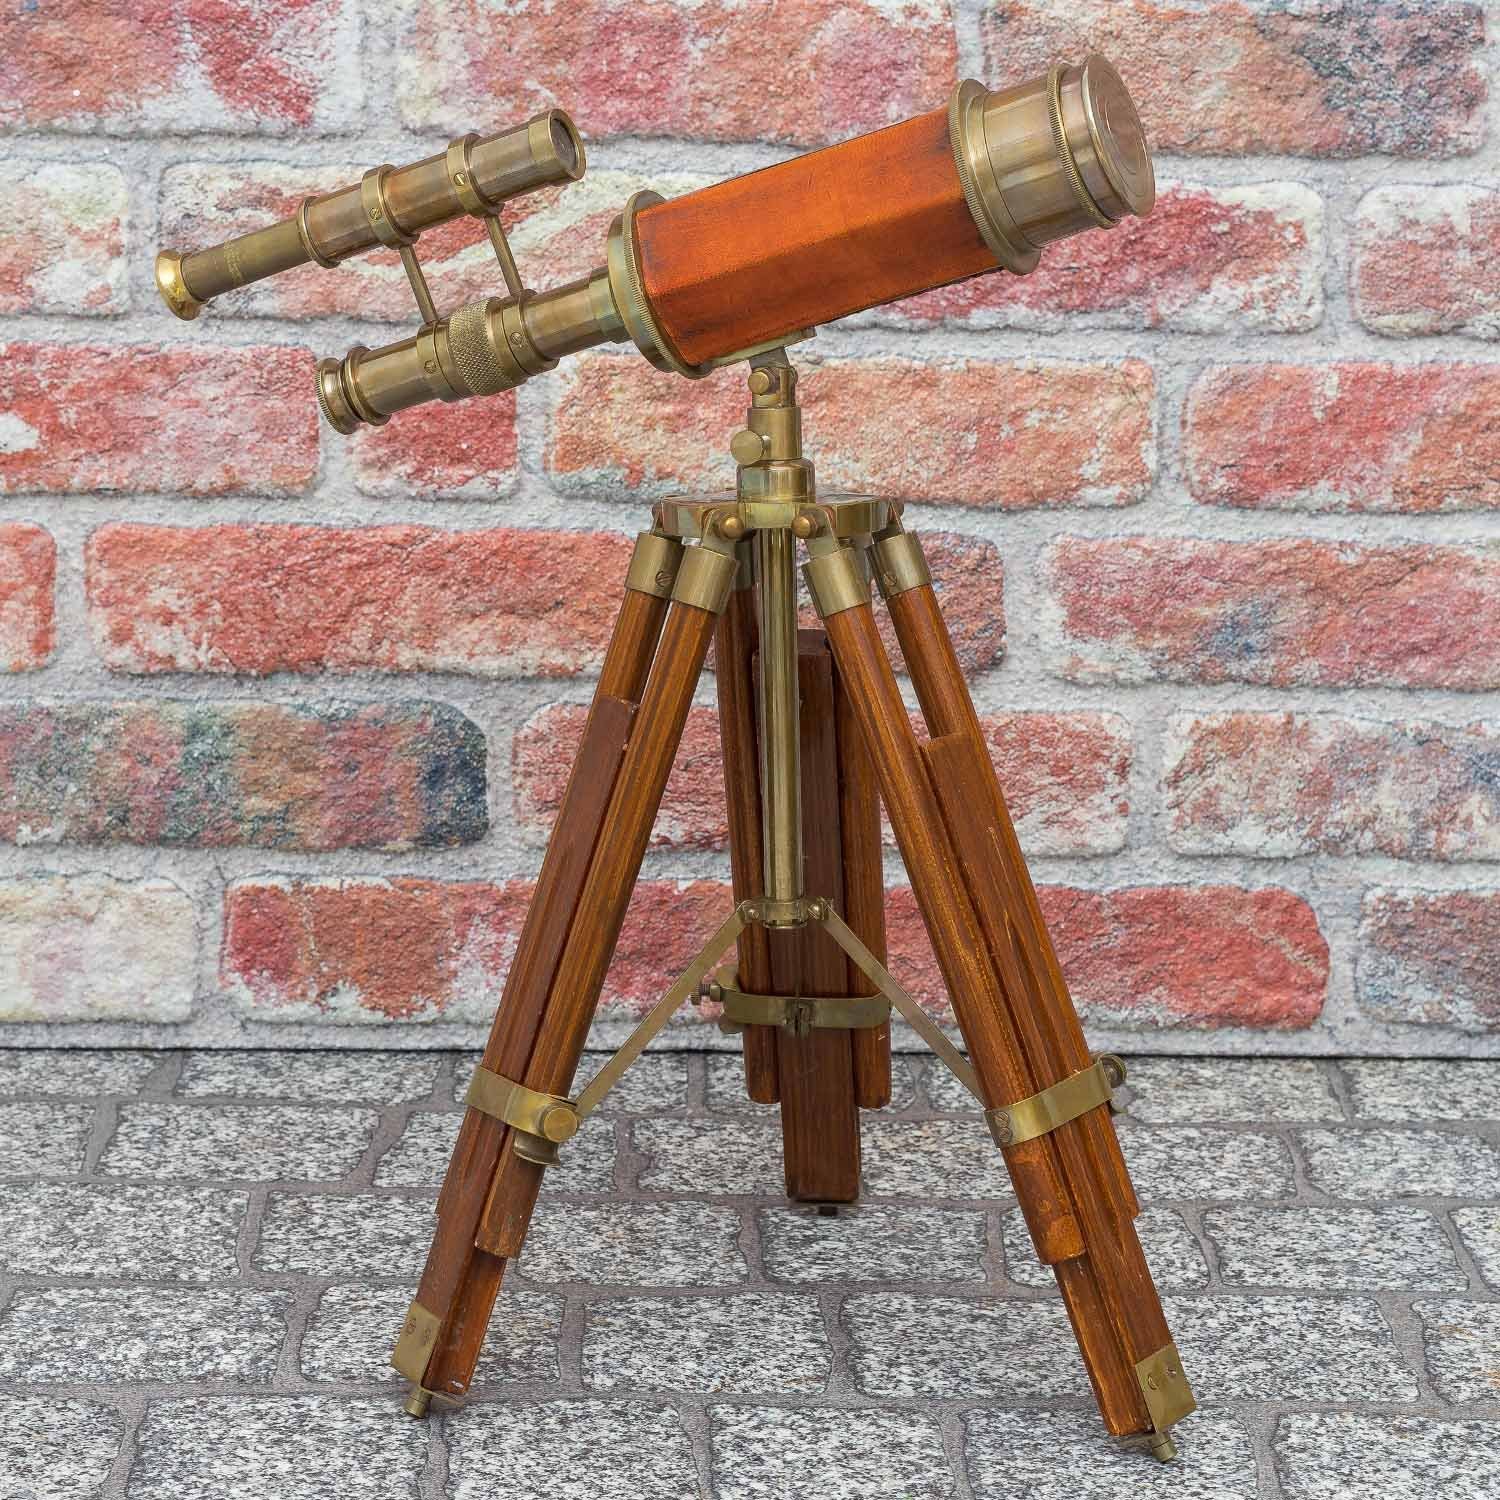 Aubaho Teleskop Antik-Stil Fernglas Doppel-Teleskop Messing Holz-Stativ mit Fernrohr